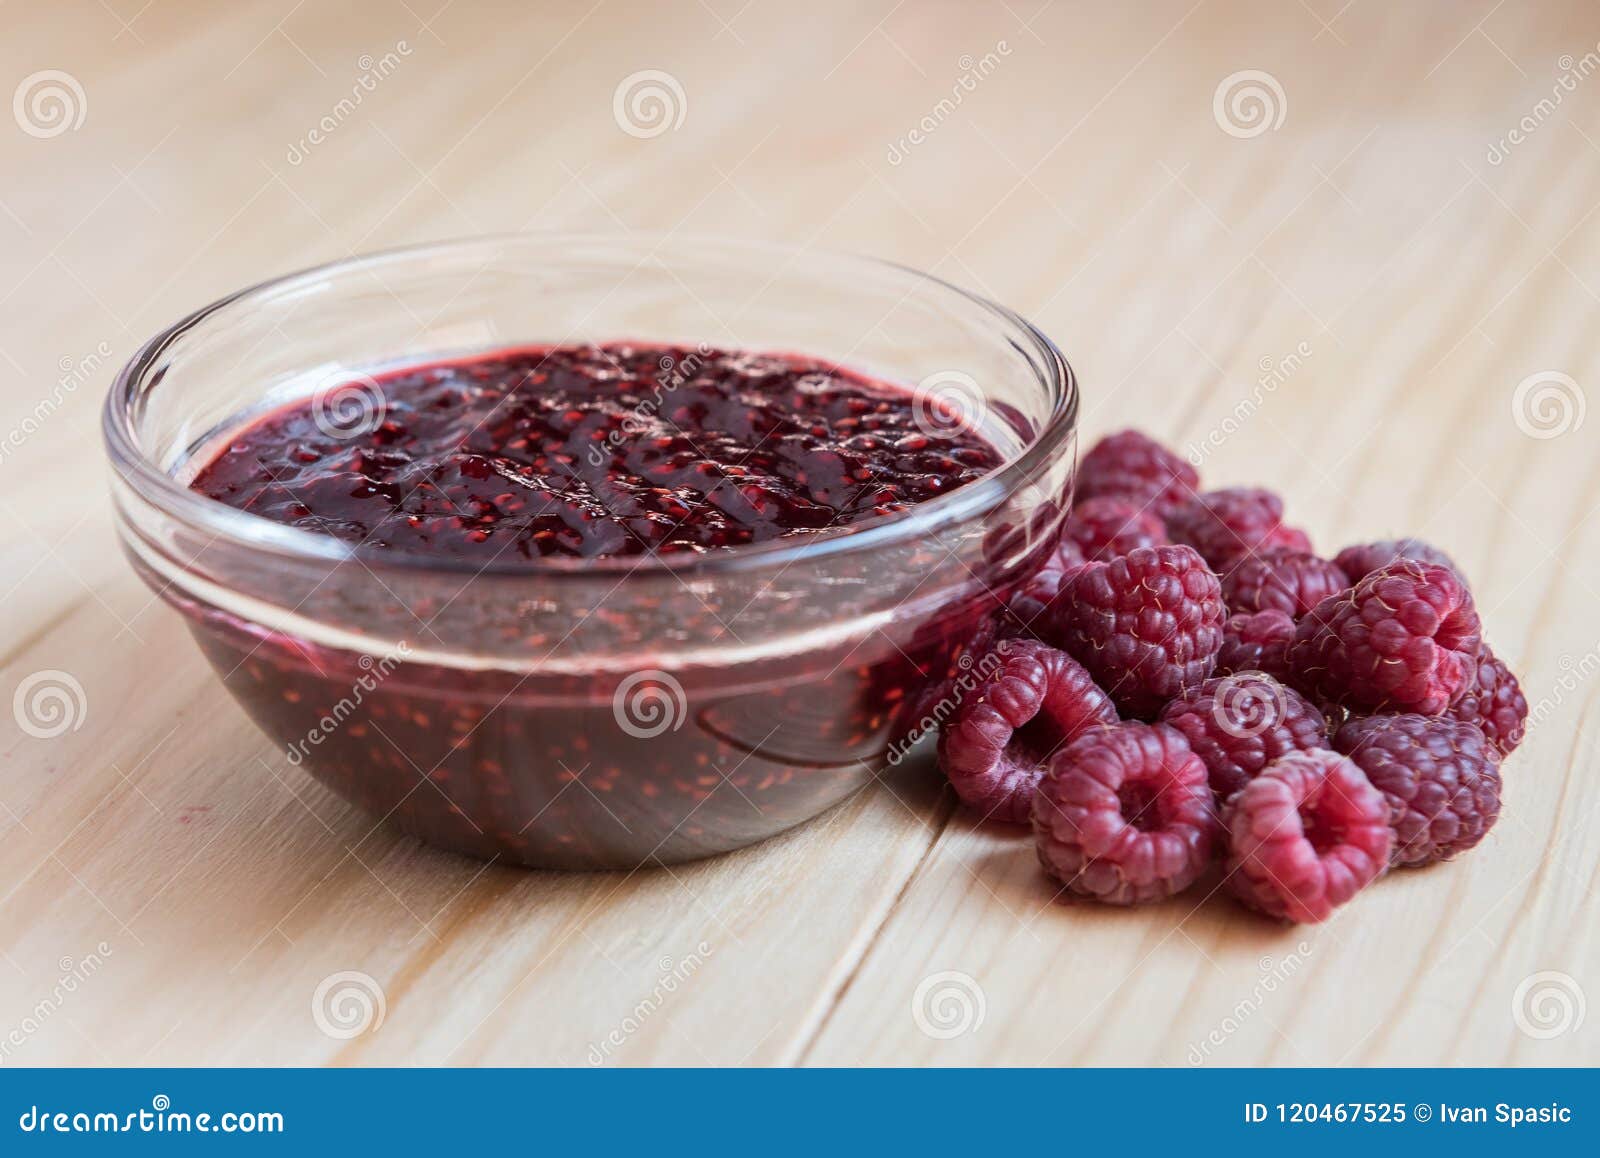 homemade raspberry jam with fresh ripe organic raspberries